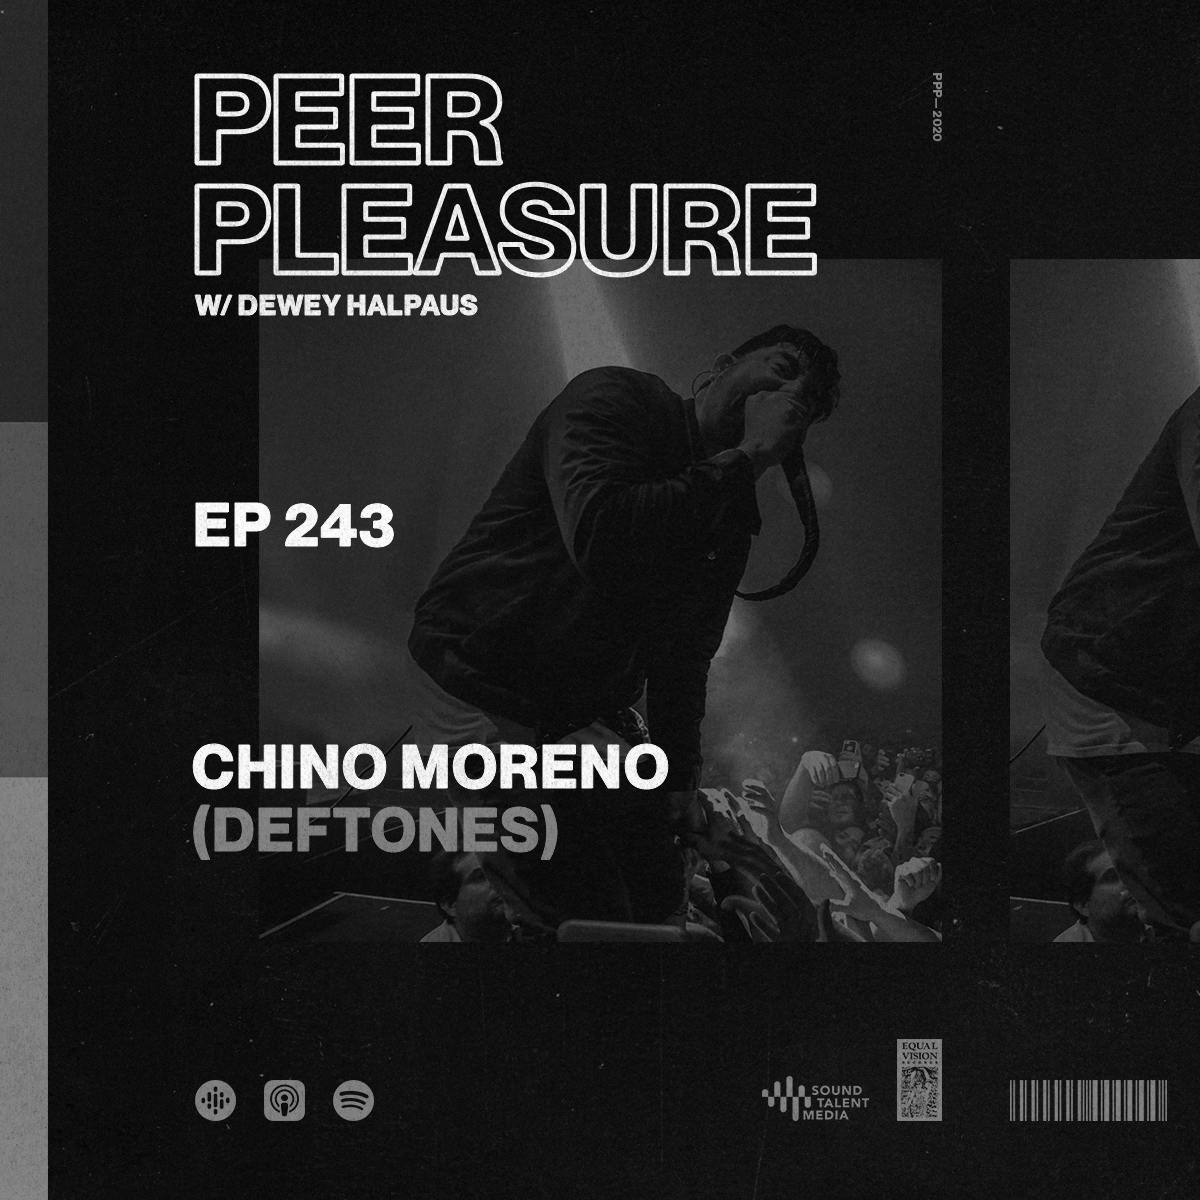 Chino Moreno (Deftones) Part 2